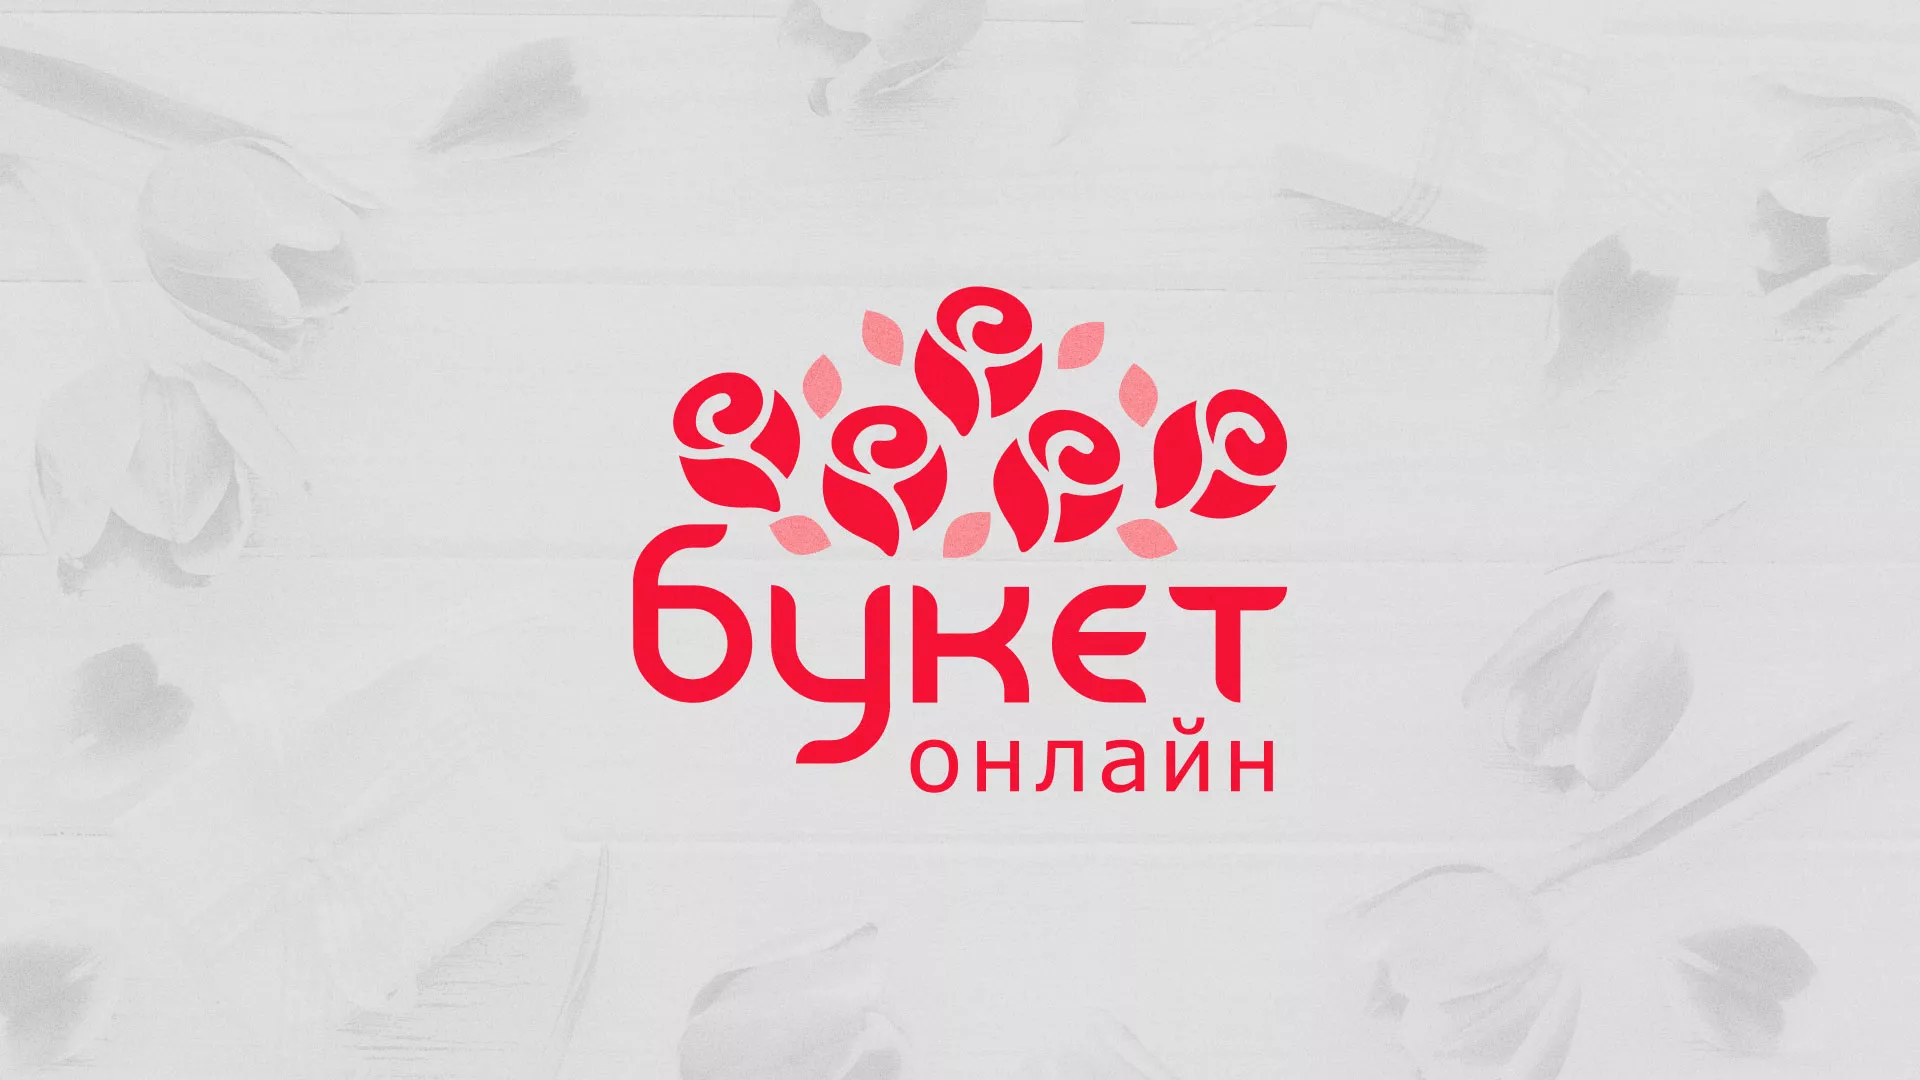 Создание интернет-магазина «Букет-онлайн» по цветам в Челябинске